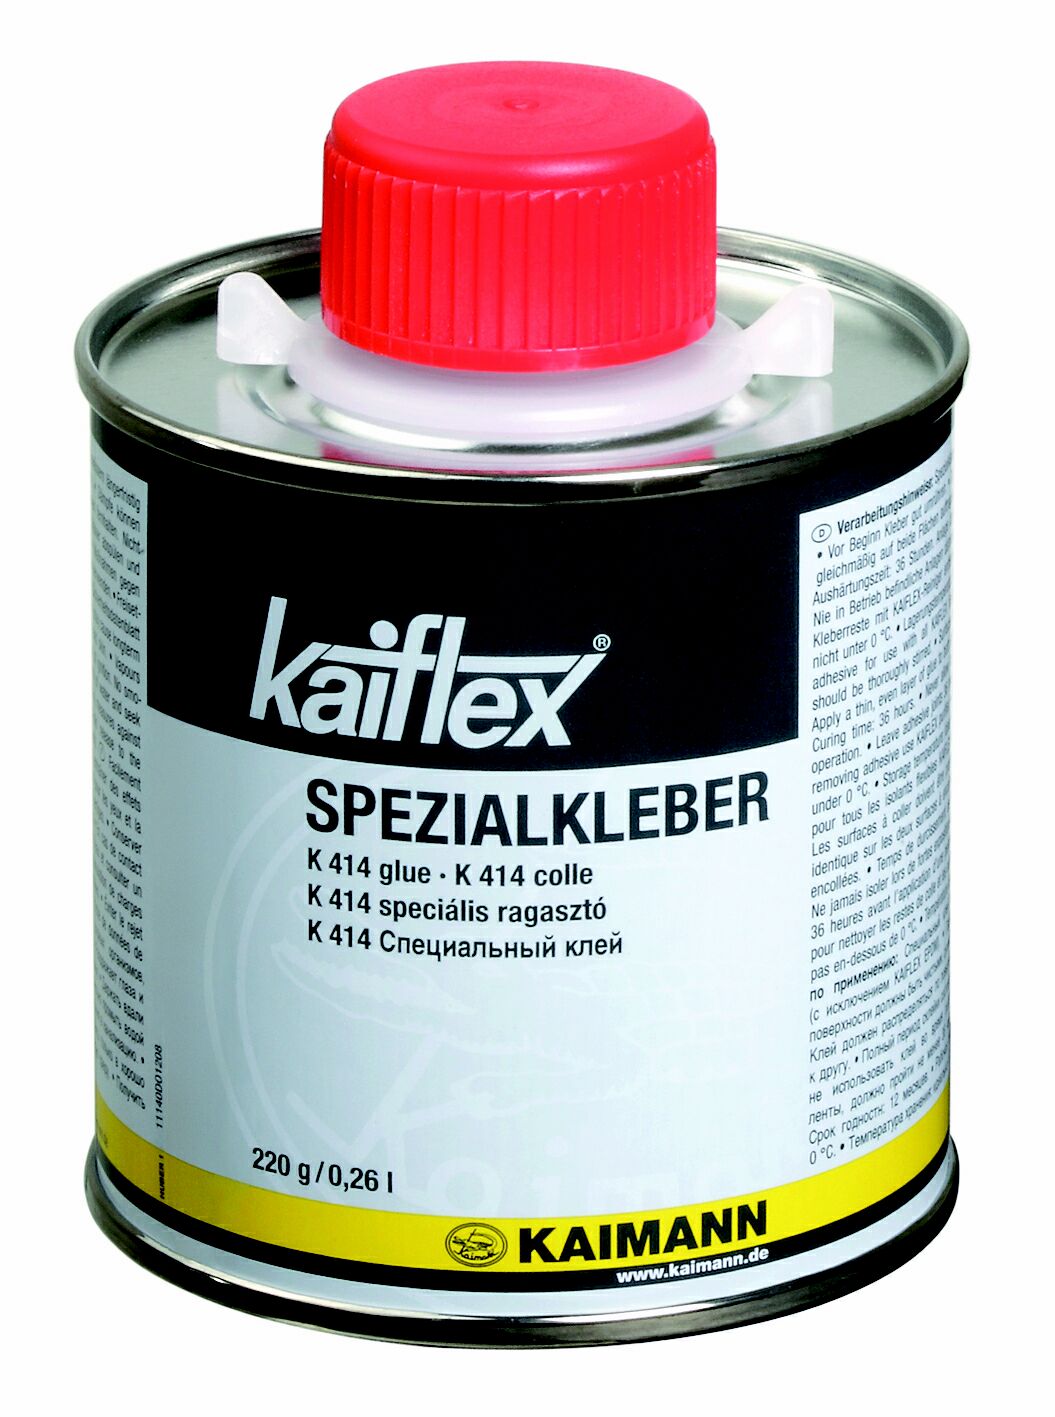 Kaiflex Kleber 414 - Toluolfrei, Zubehoer, Kaimann, Kaiflex, Isoliermaterial, Installation